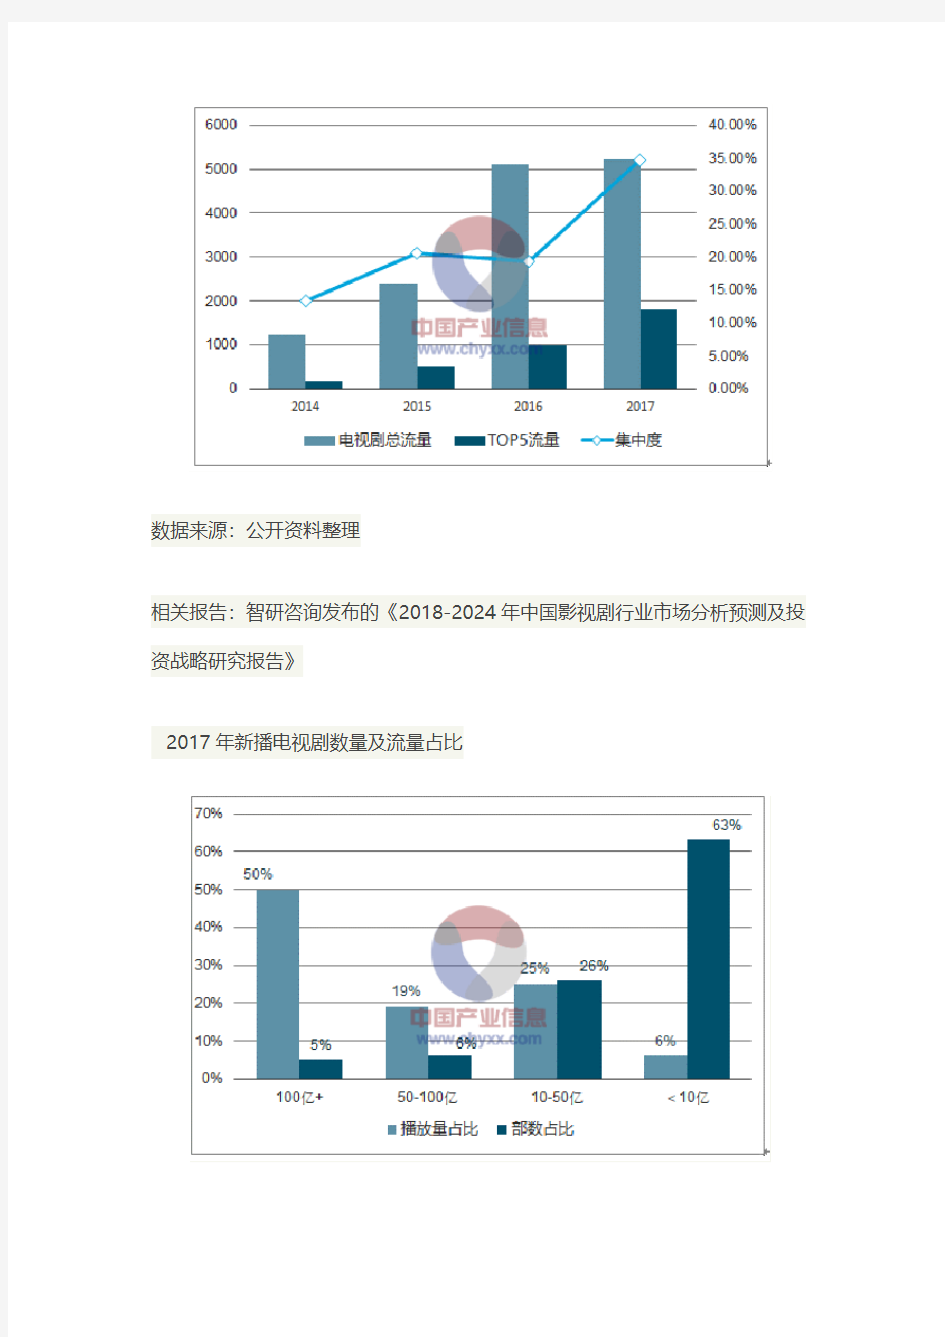 中国影视行业现状调研与发展机遇分析报告(2017年版)